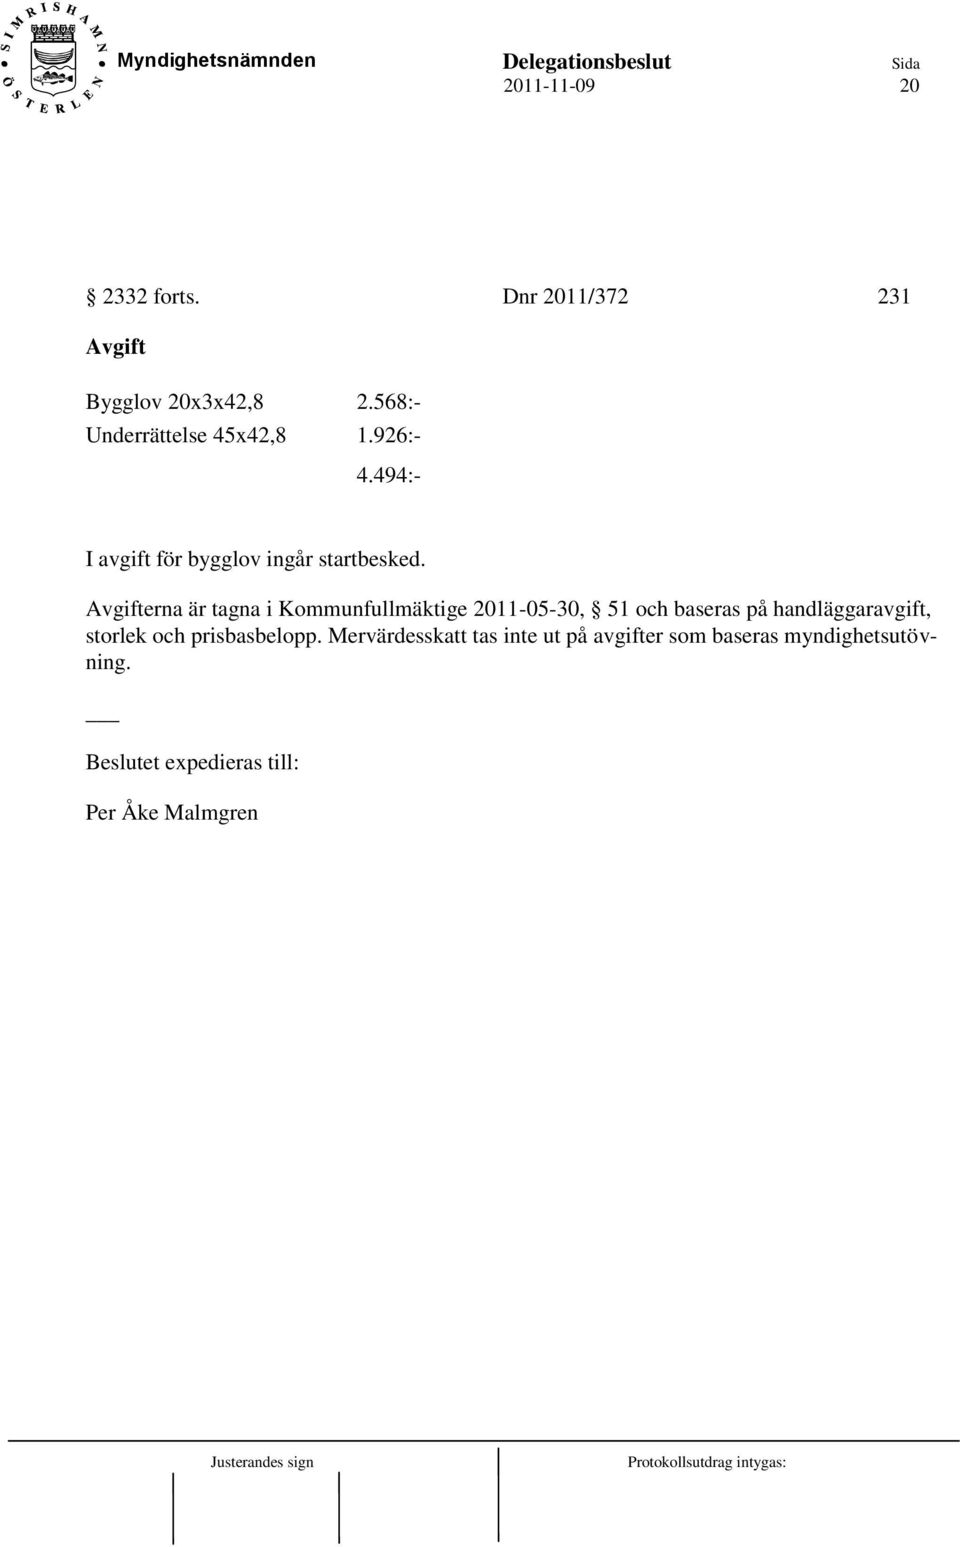 Avgifterna är tagna i Kommunfullmäktige 2011-05-30, 51 och baseras på handläggaravgift, storlek